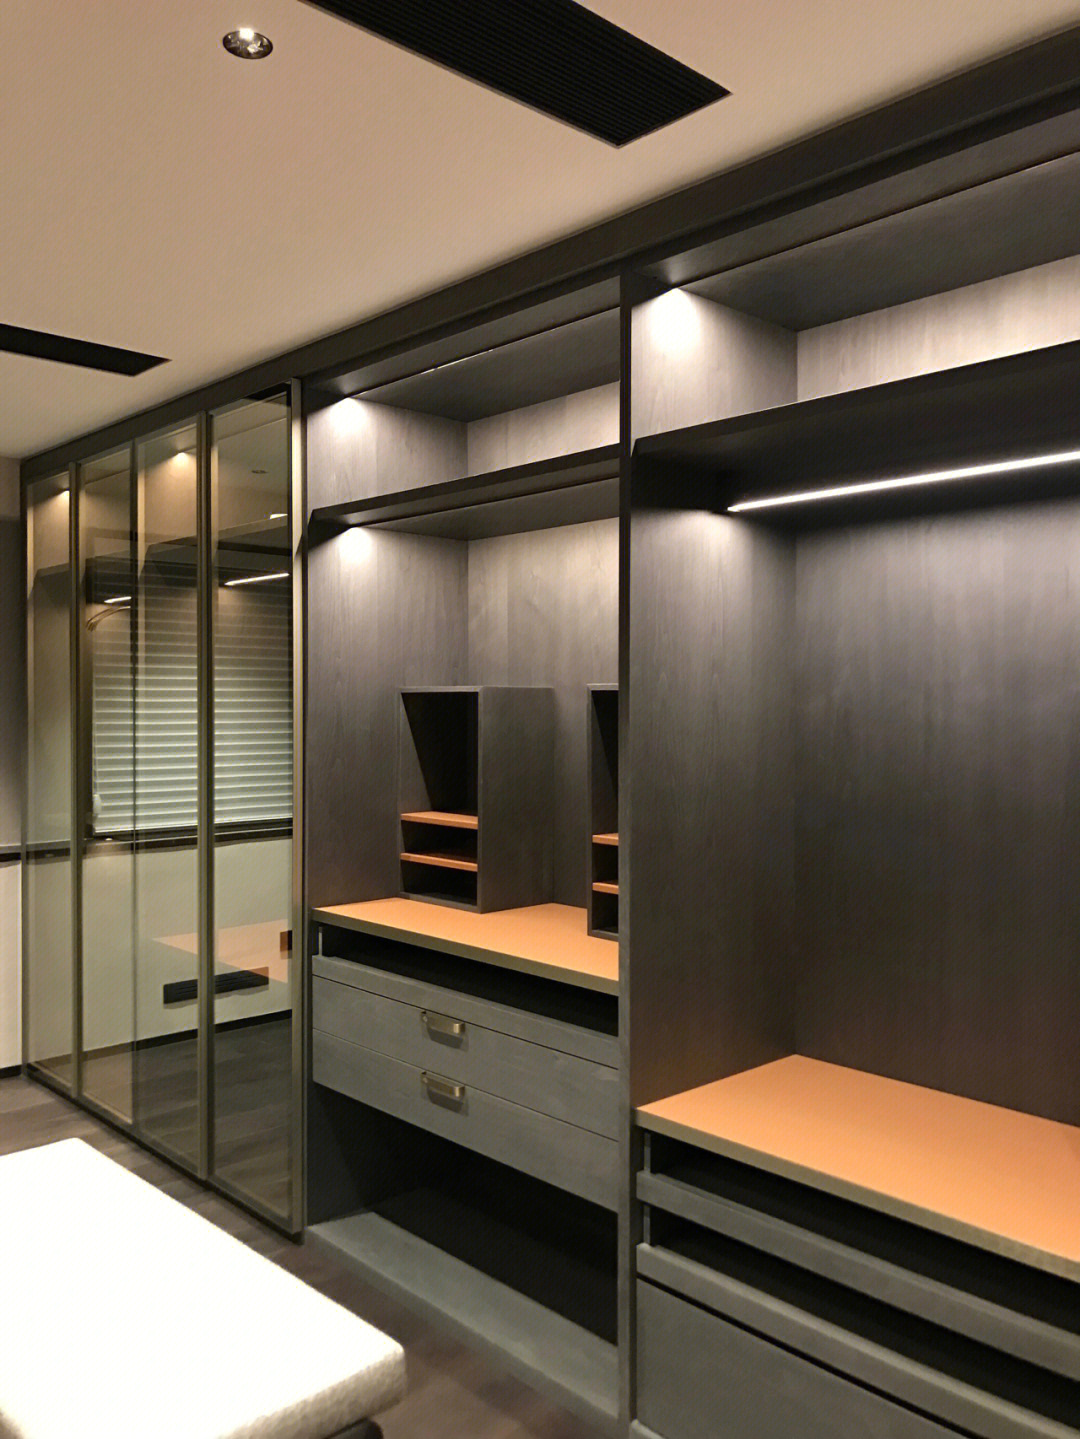 板 玻璃门衣柜9999公共区域柜体:主要以玻璃柜门结合铜的材质提高